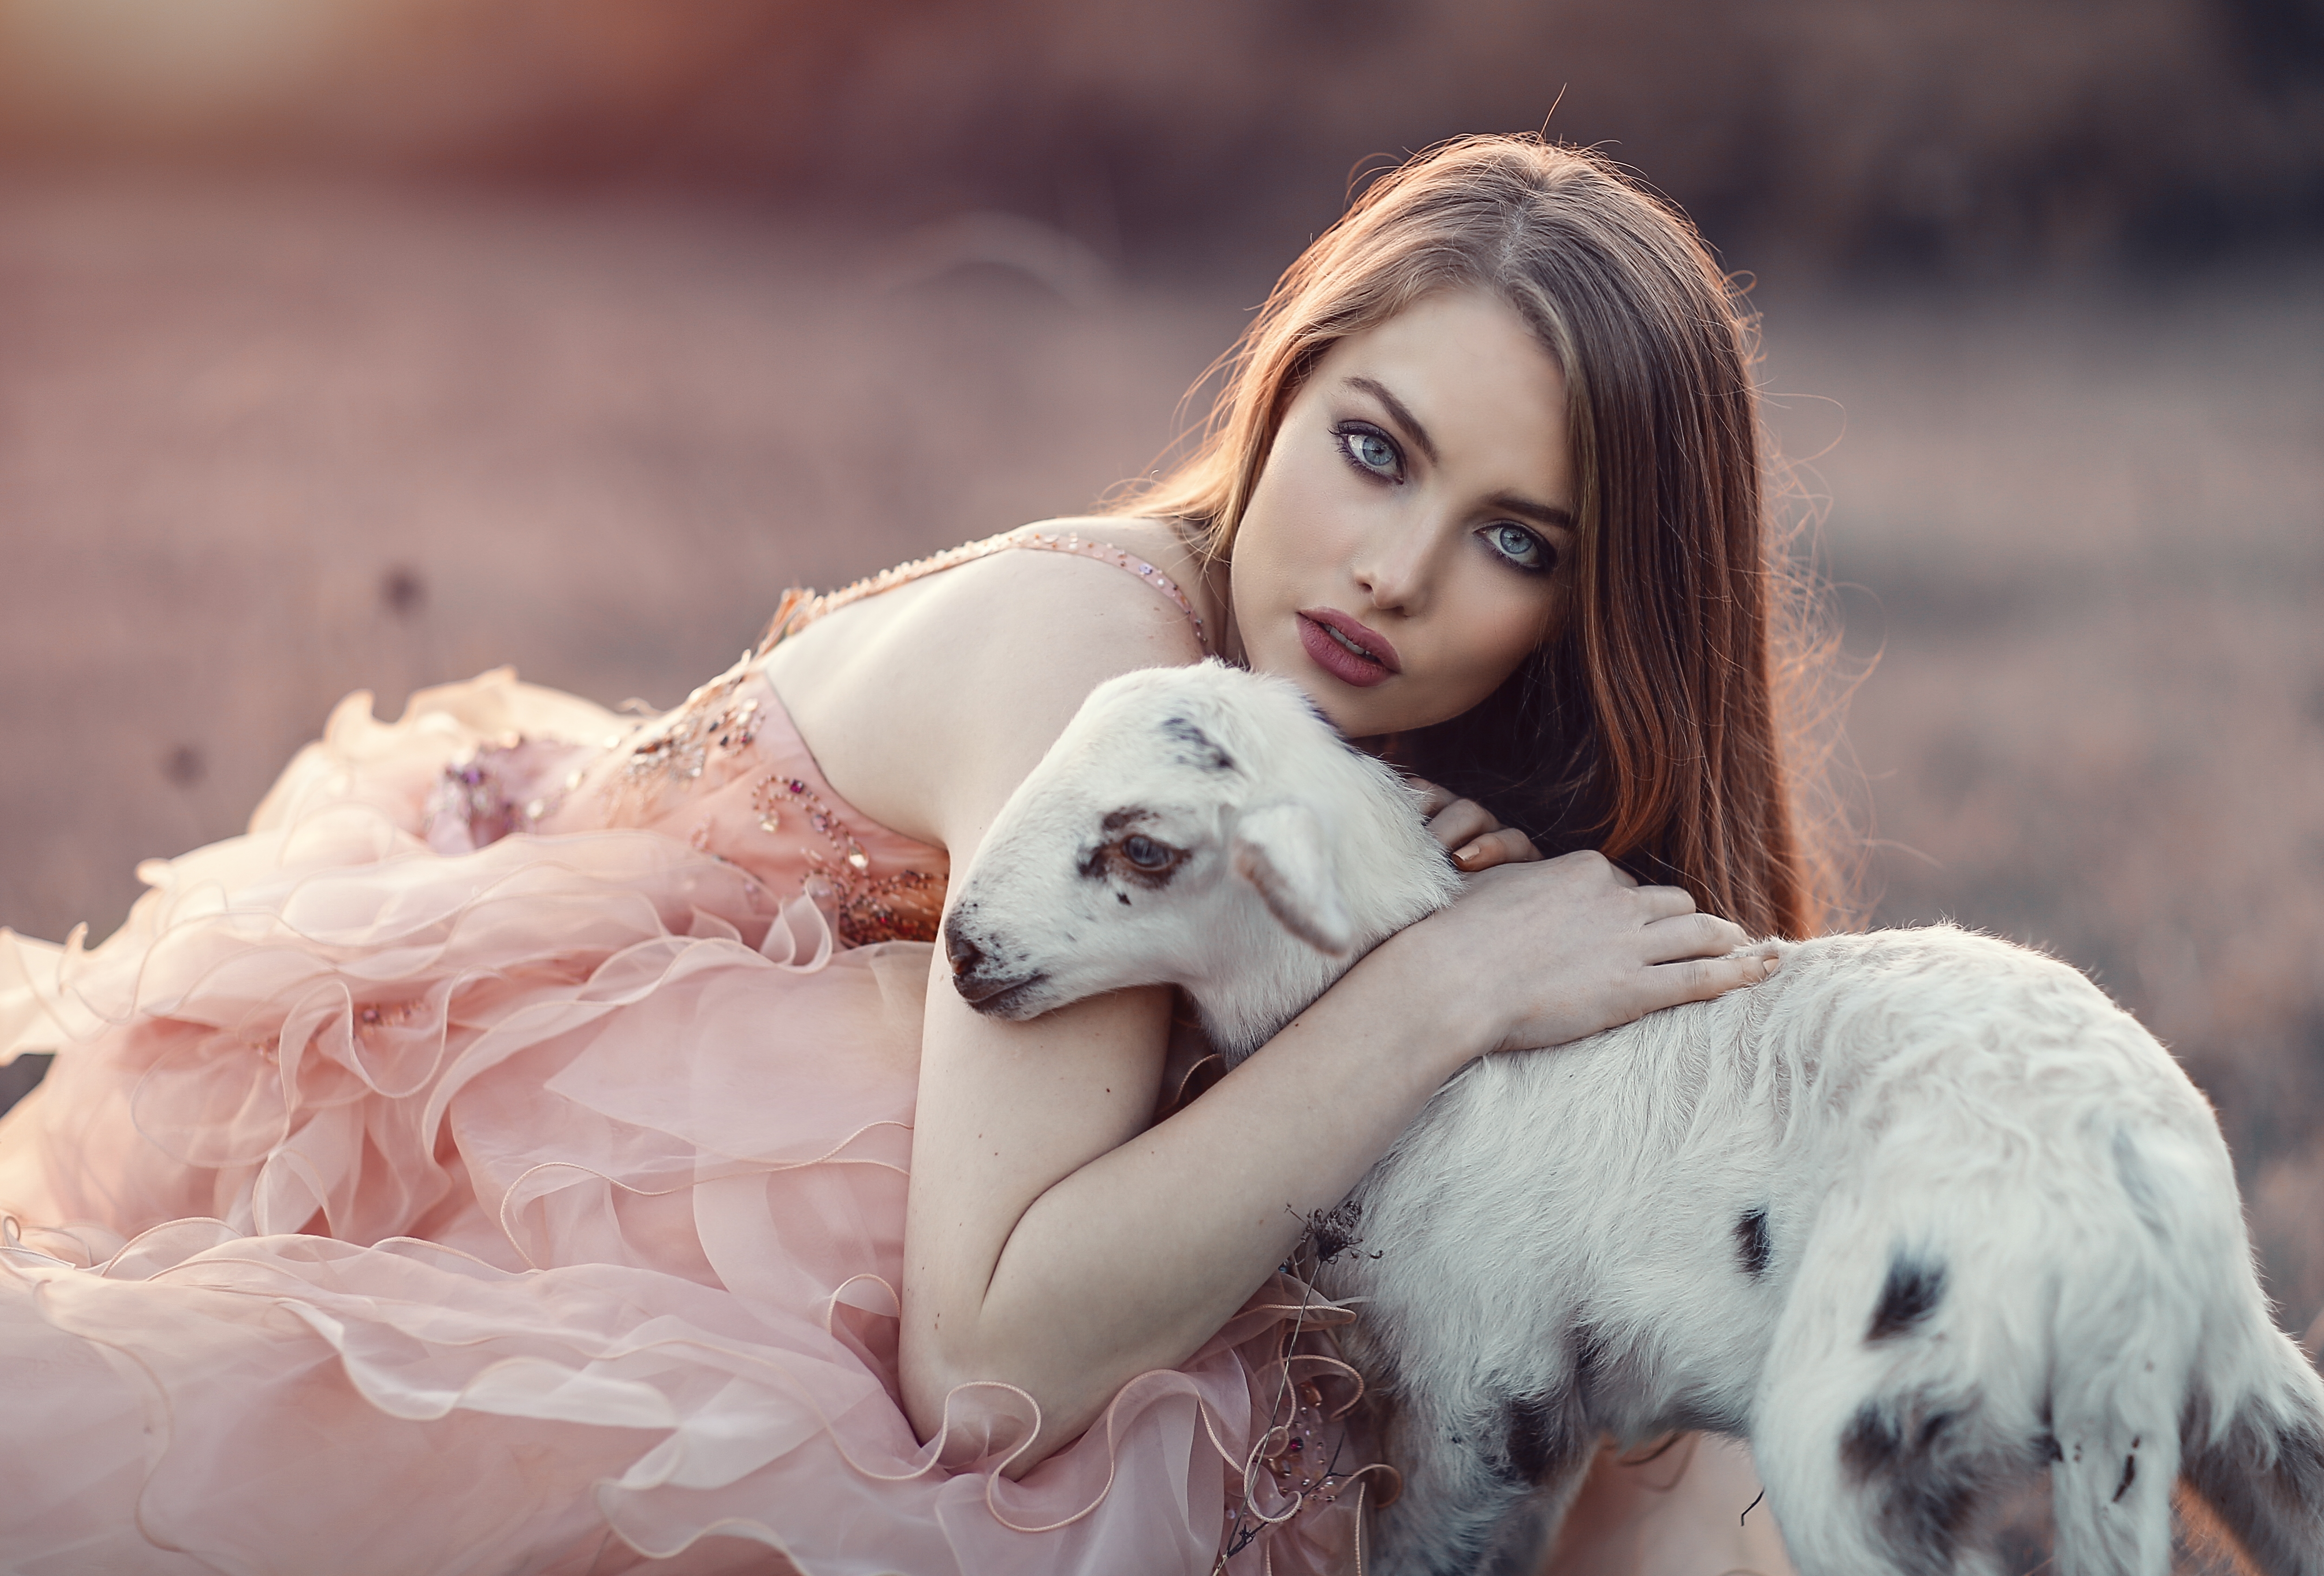 Woman with animals. Алессандро ди Чикко. Алессандро ди Чикко портрет взгляд. Фотосессия с животными. Девушка с питомцем.